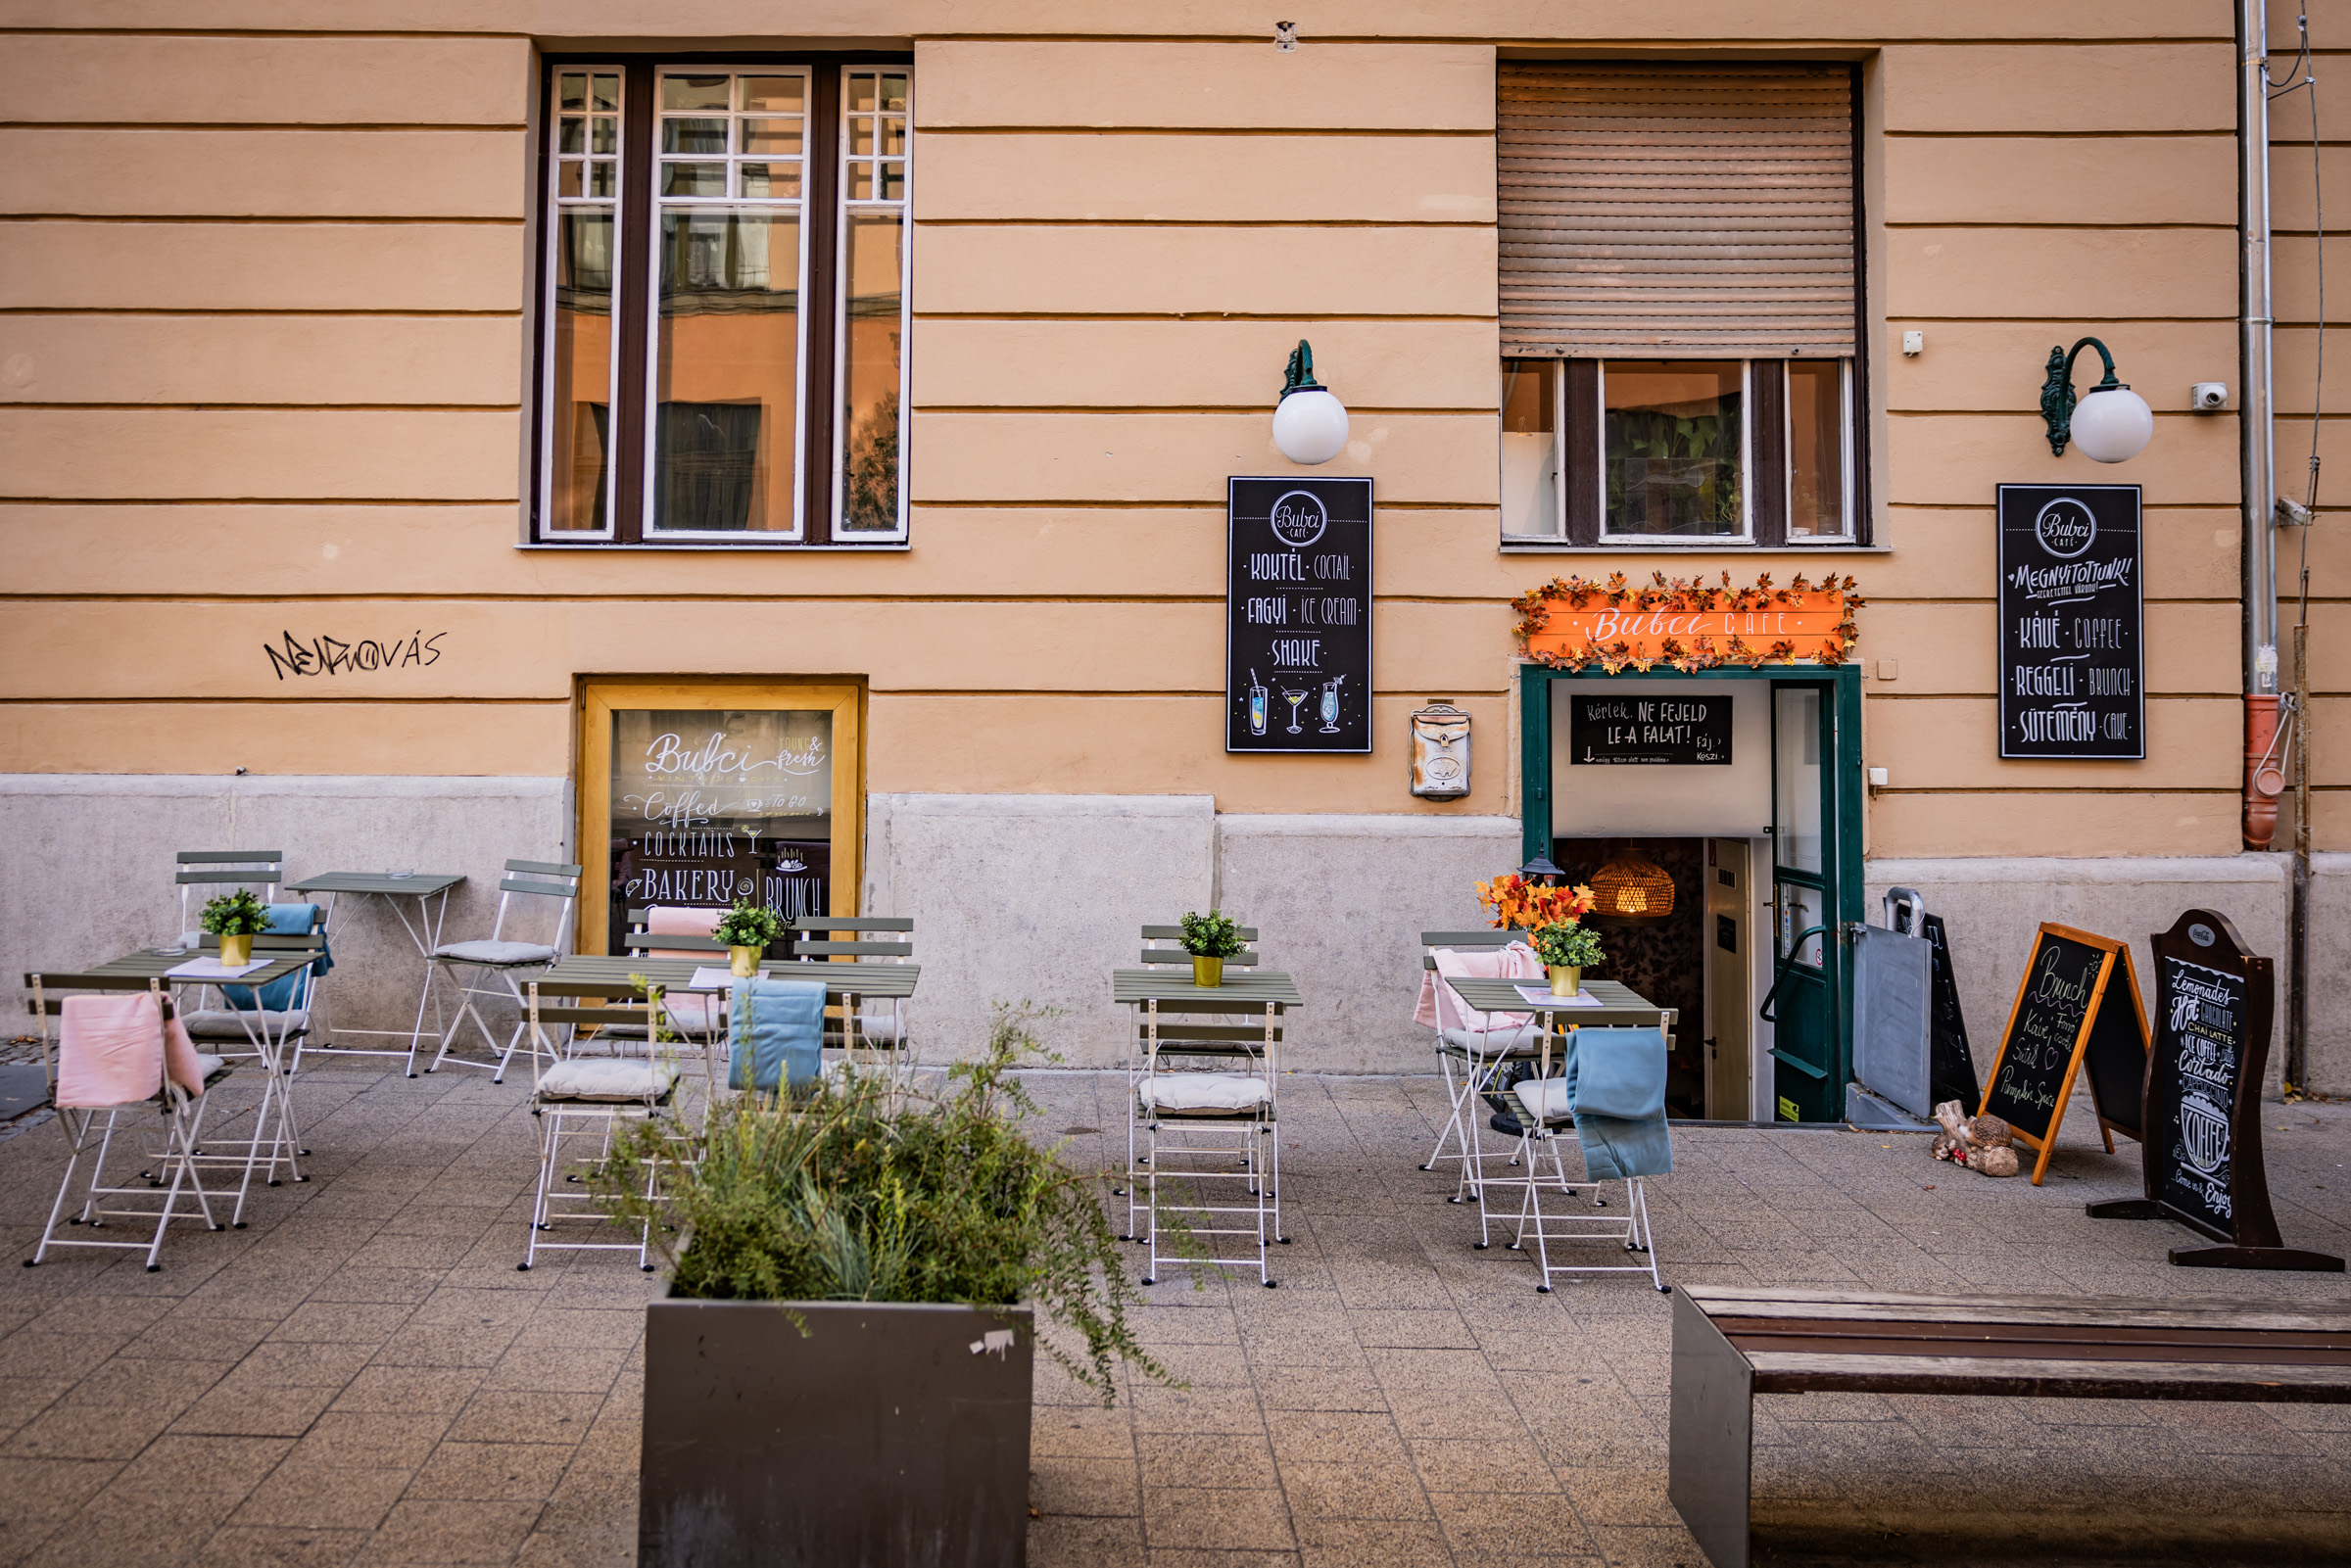 Finomságok a reggeli brunchtól az esti gin-tonikig – Megnyitott a Bubci Café a Móricznál